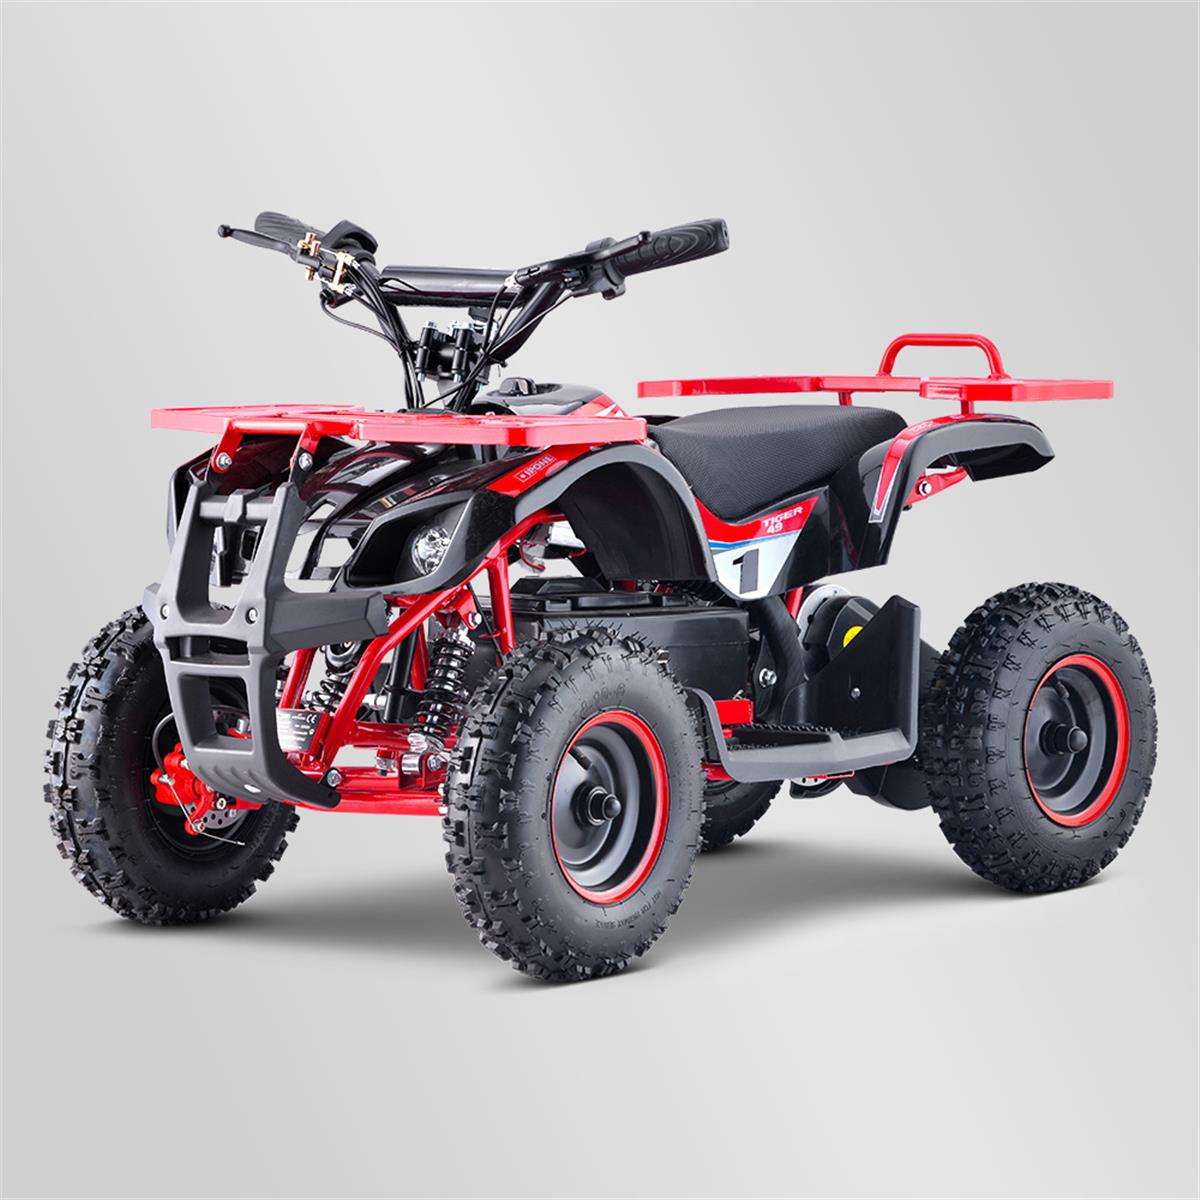 Quad Electrique 800w Enfant Rouge Utilitaire - Extrem Motos